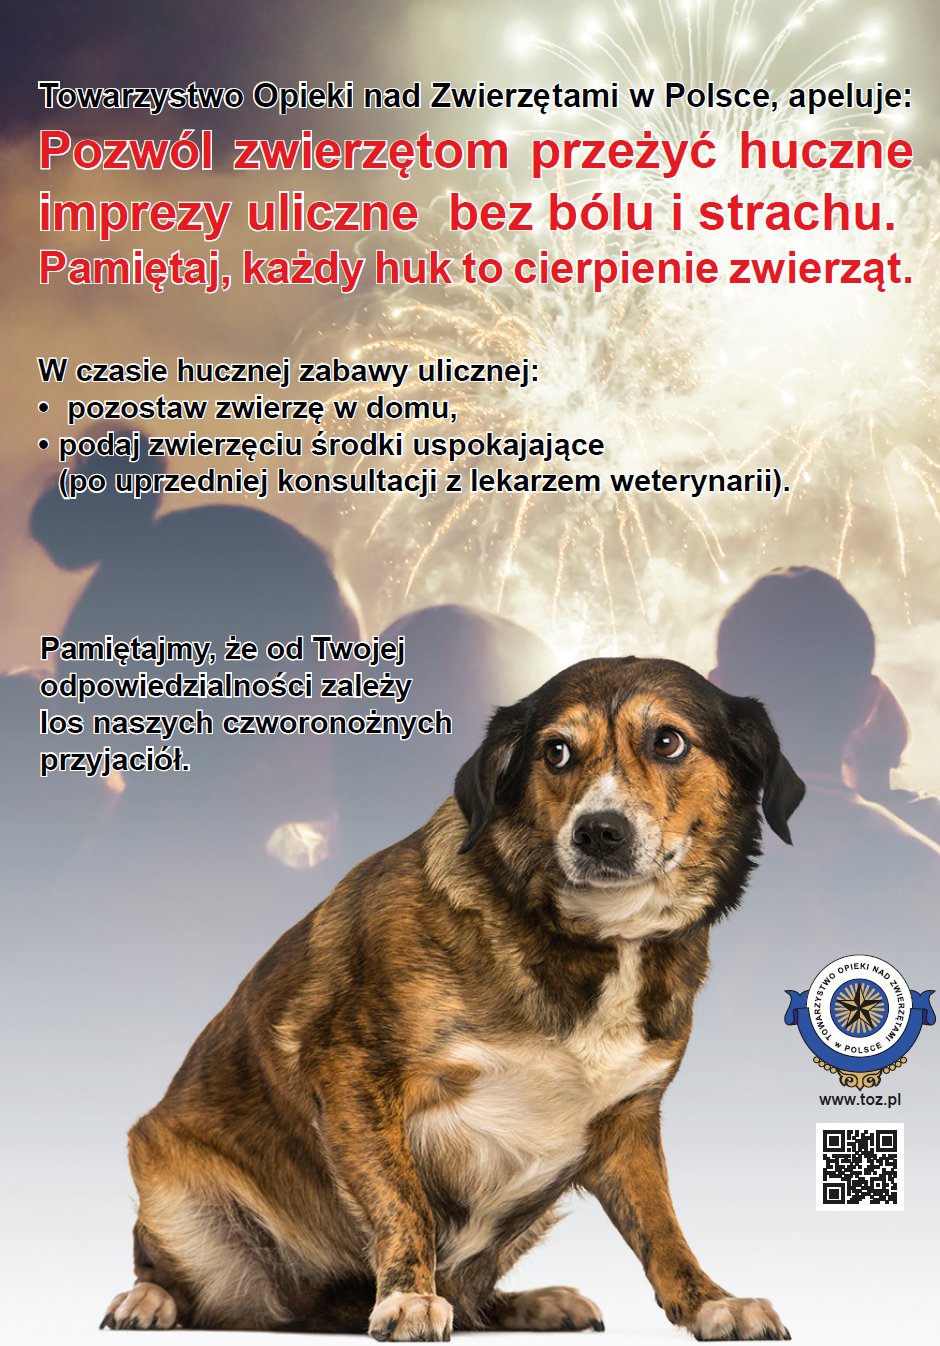 Towarzystwo Opieki nad Zwierzętami w Polsce, apeluje: